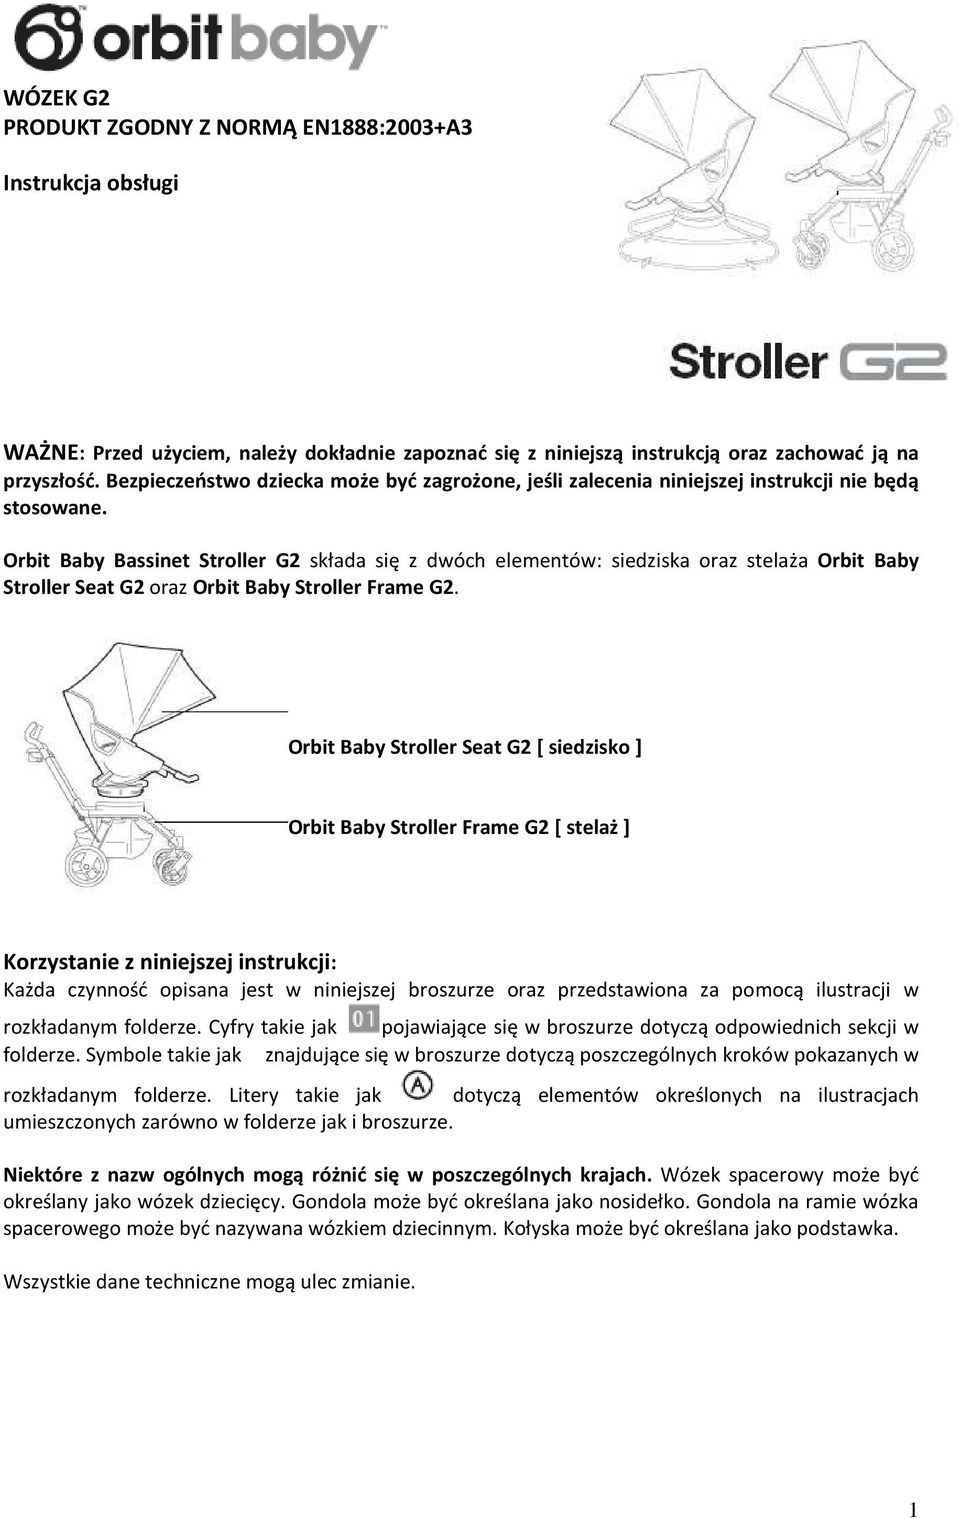 Orbit Baby Bassinet Stroller G2 składa się z dwóch elementów: siedziska oraz stelaża Orbit Baby Stroller Seat G2 oraz Orbit Baby Stroller Frame G2.